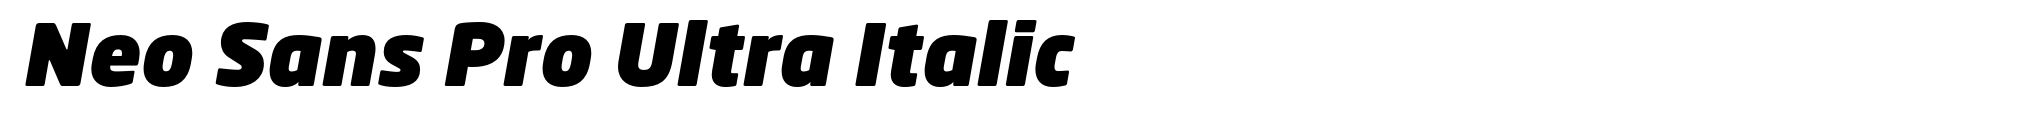 Neo Sans Pro Ultra Italic image